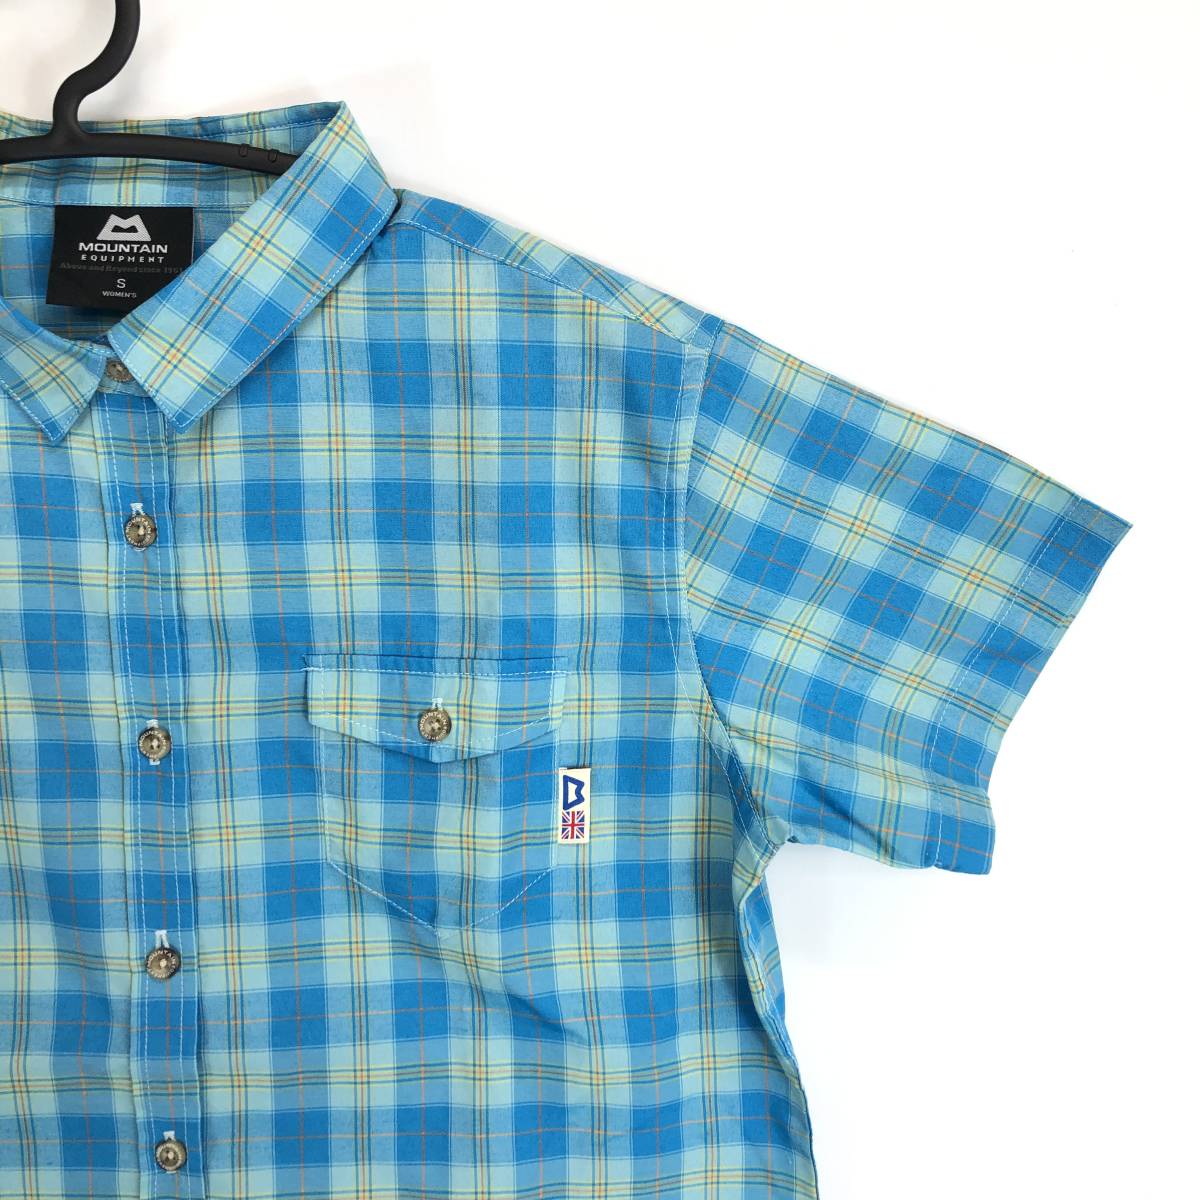 MOUNTAIN EQUIPMENT マウンテンイクイップメント 半袖ボタンシャツ チェック柄 ブルー系 レディースSサイズ 422826